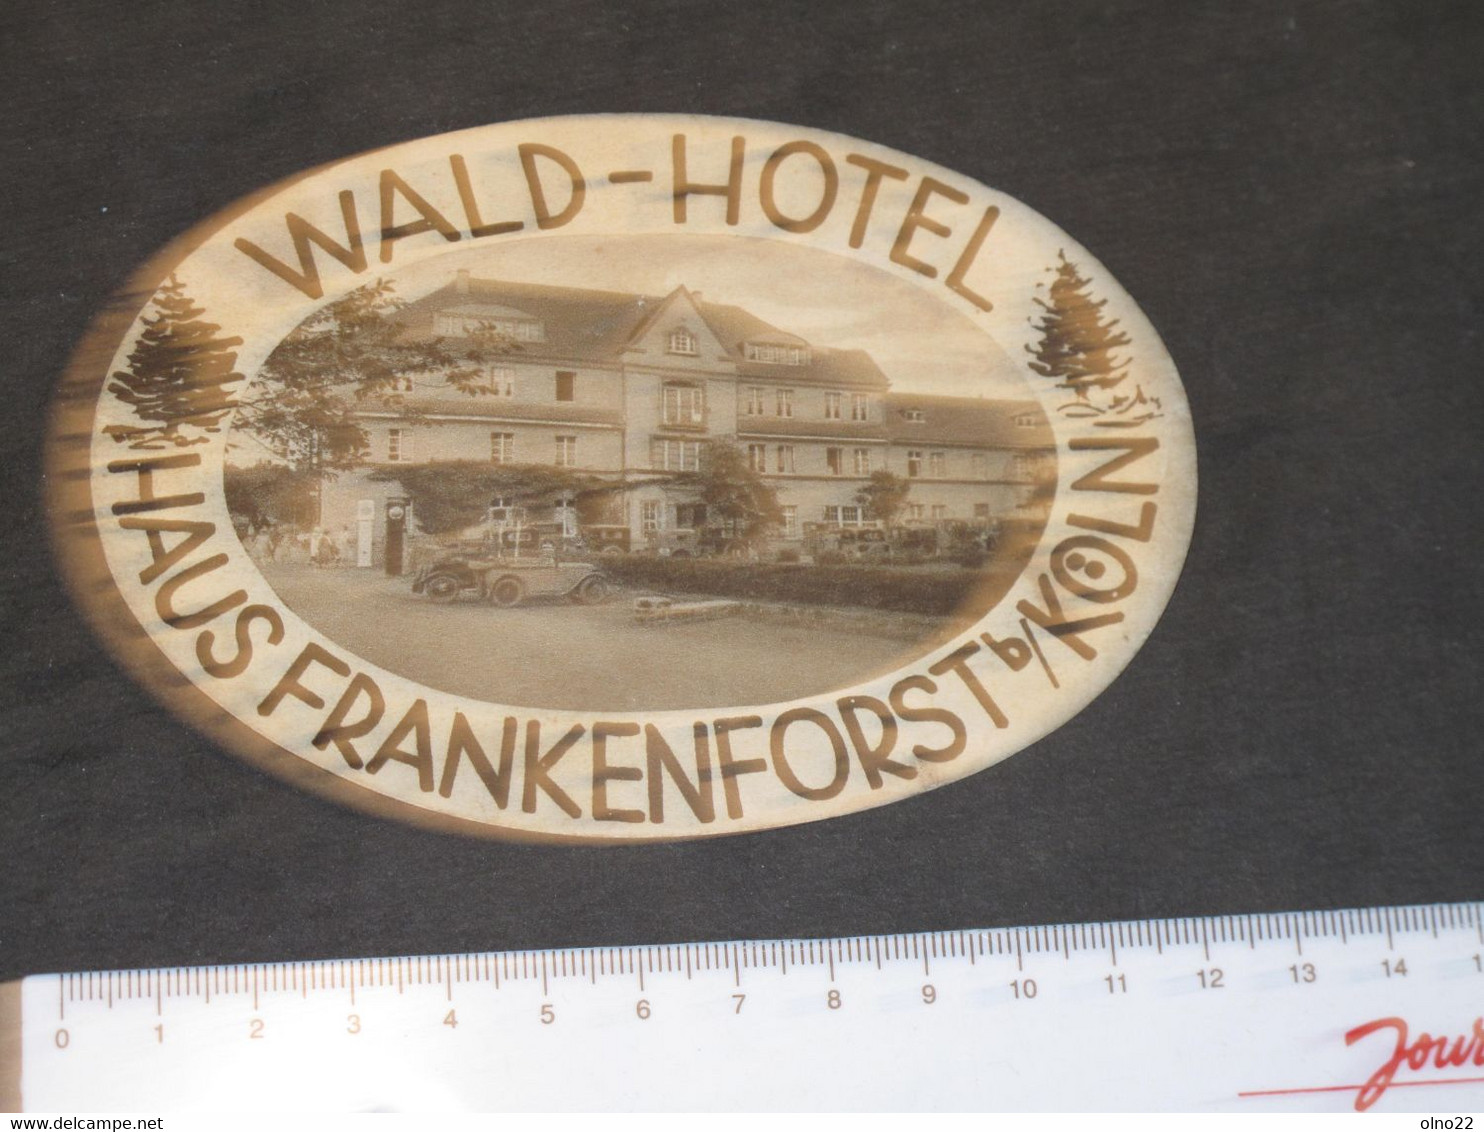 WALD-HOTEL - HAUS FRANKENFORST B/ KOLN - ETIQUETTE POUR VALISE - Etiquettes D'hotels